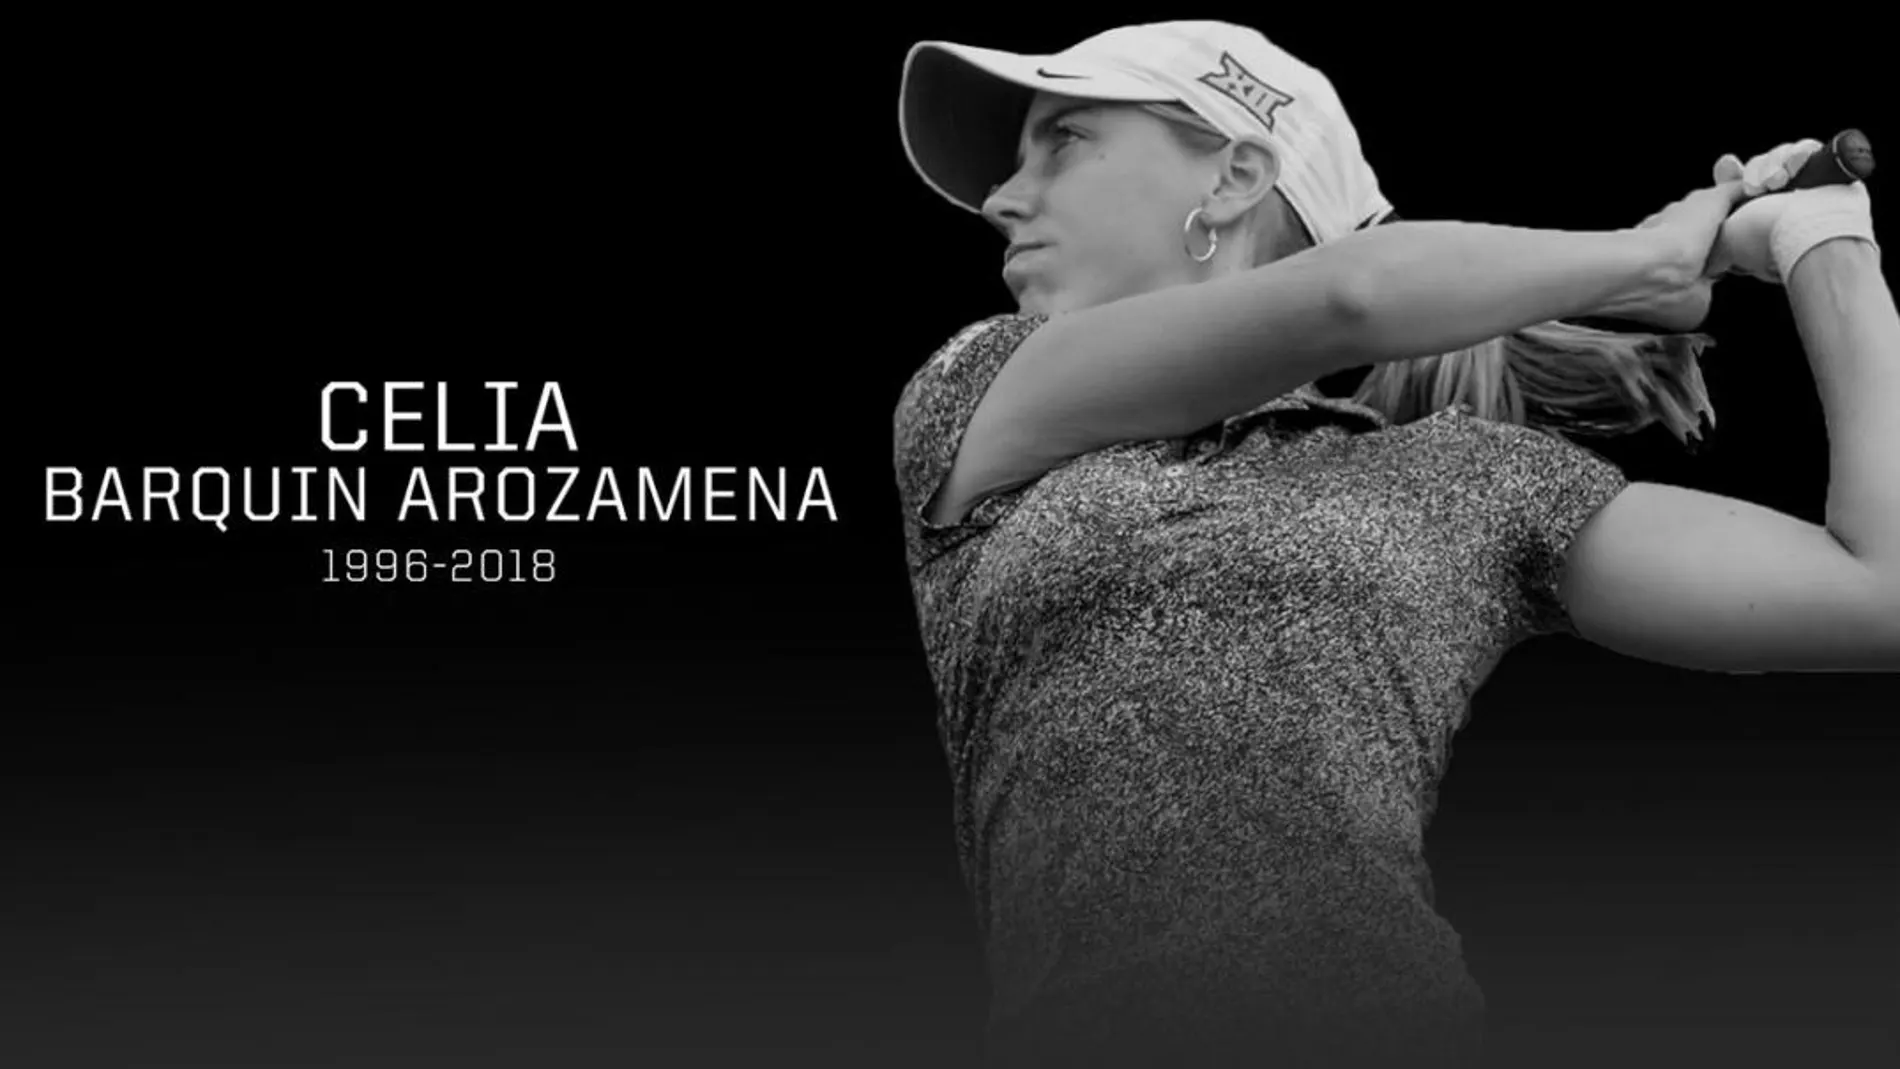 Celia Barquín, golfista española de 22 años